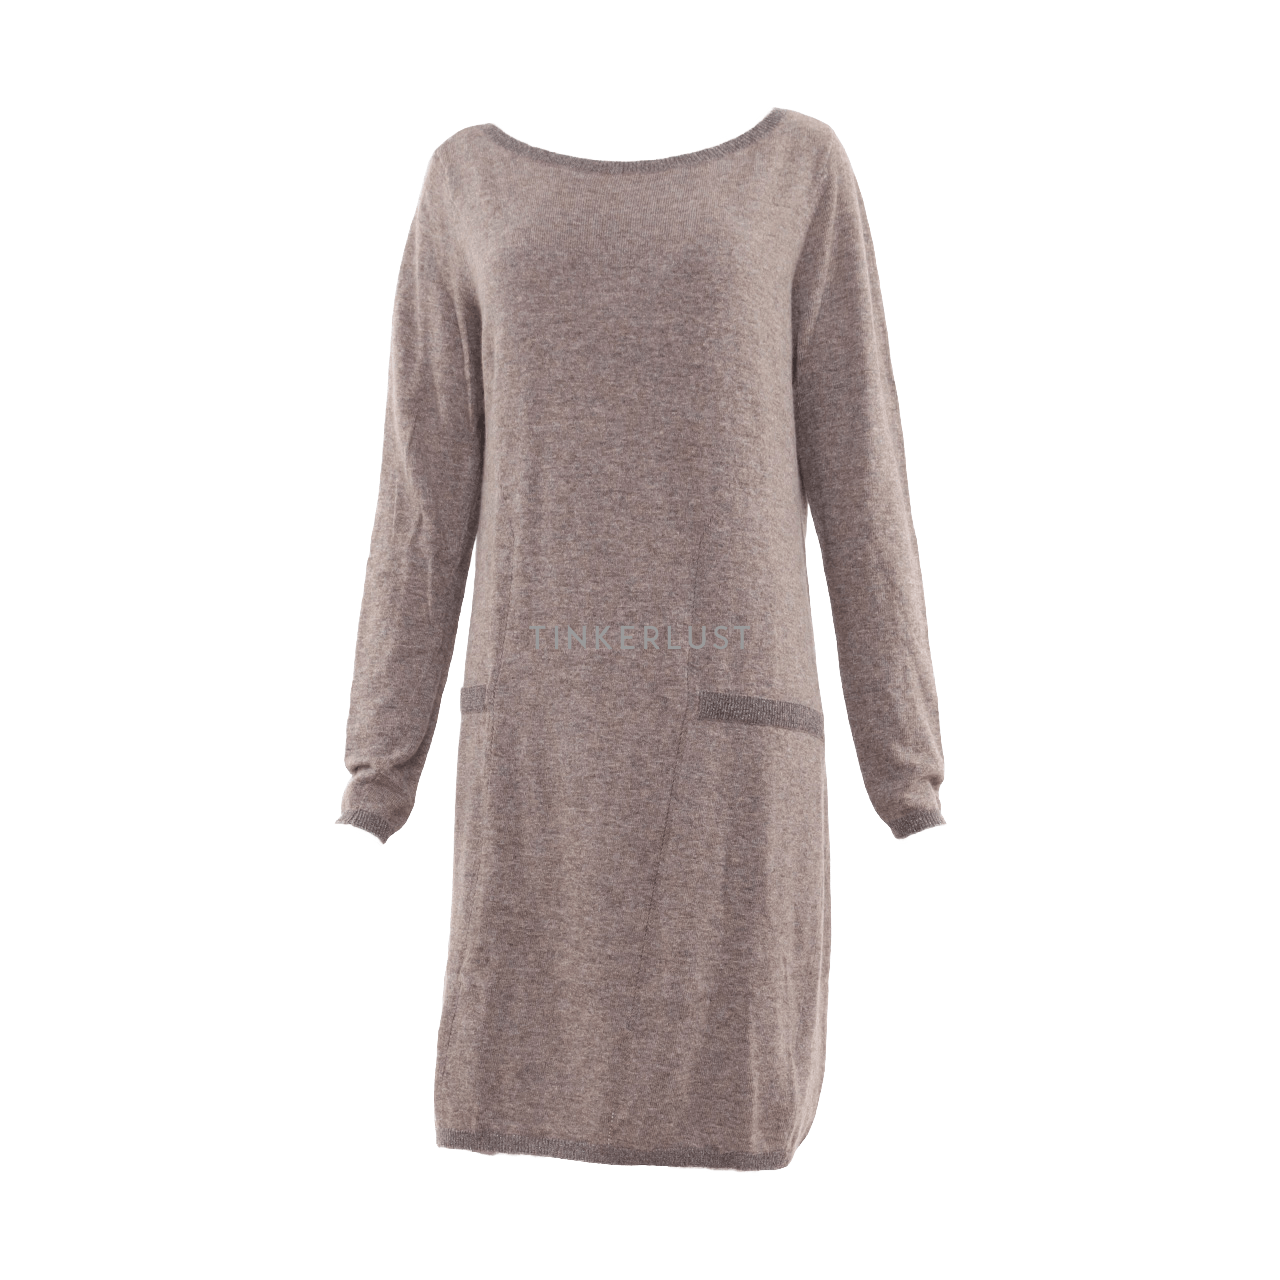 Esprit Grey Knit Mini Dress